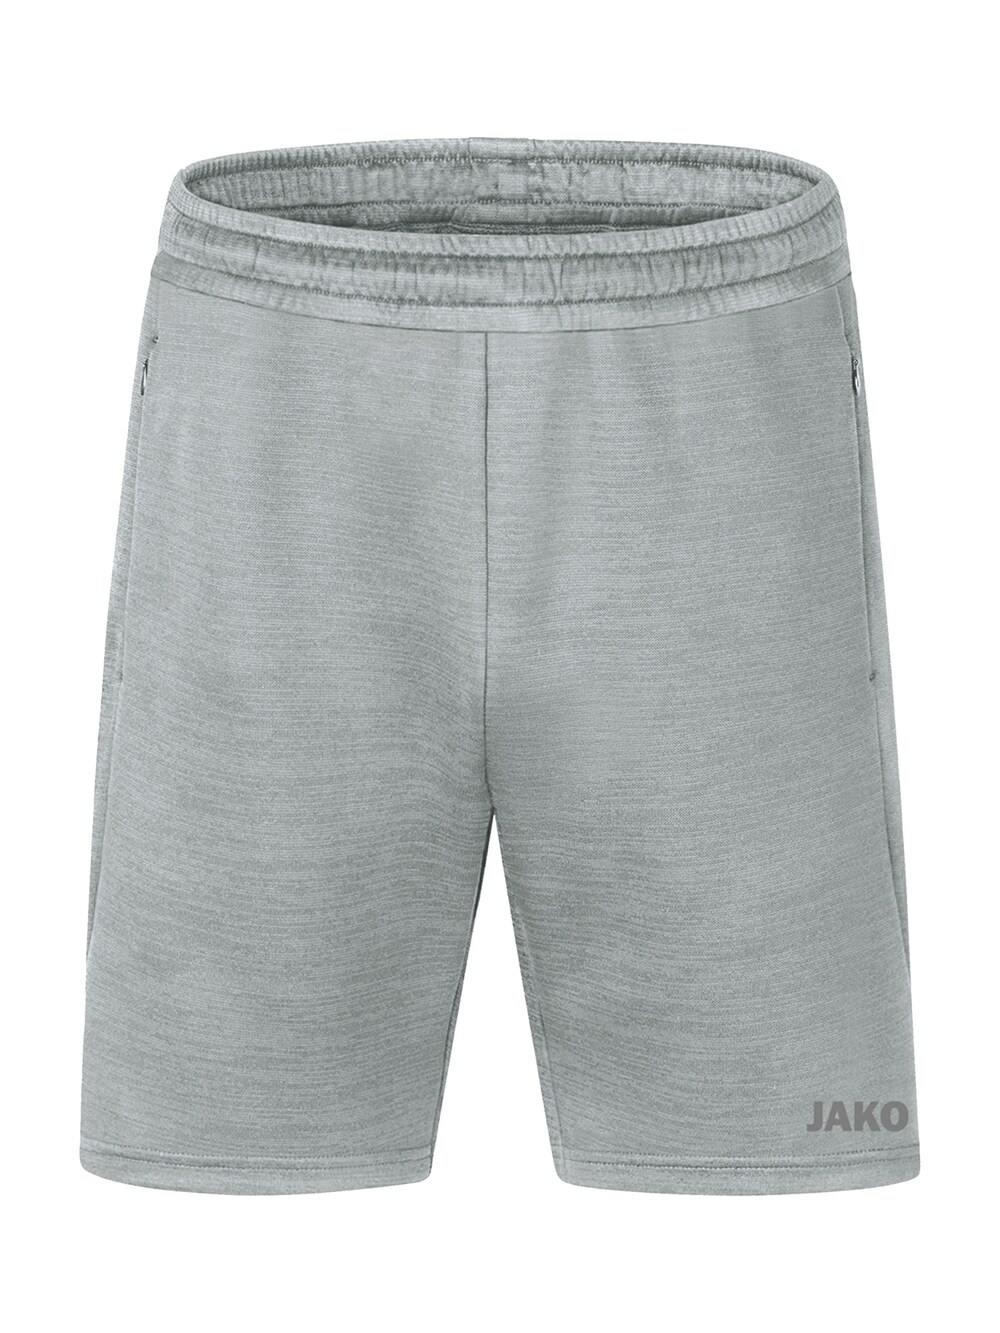 Обычные тренировочные брюки Jako, серый обычные тренировочные брюки jako ночной синий